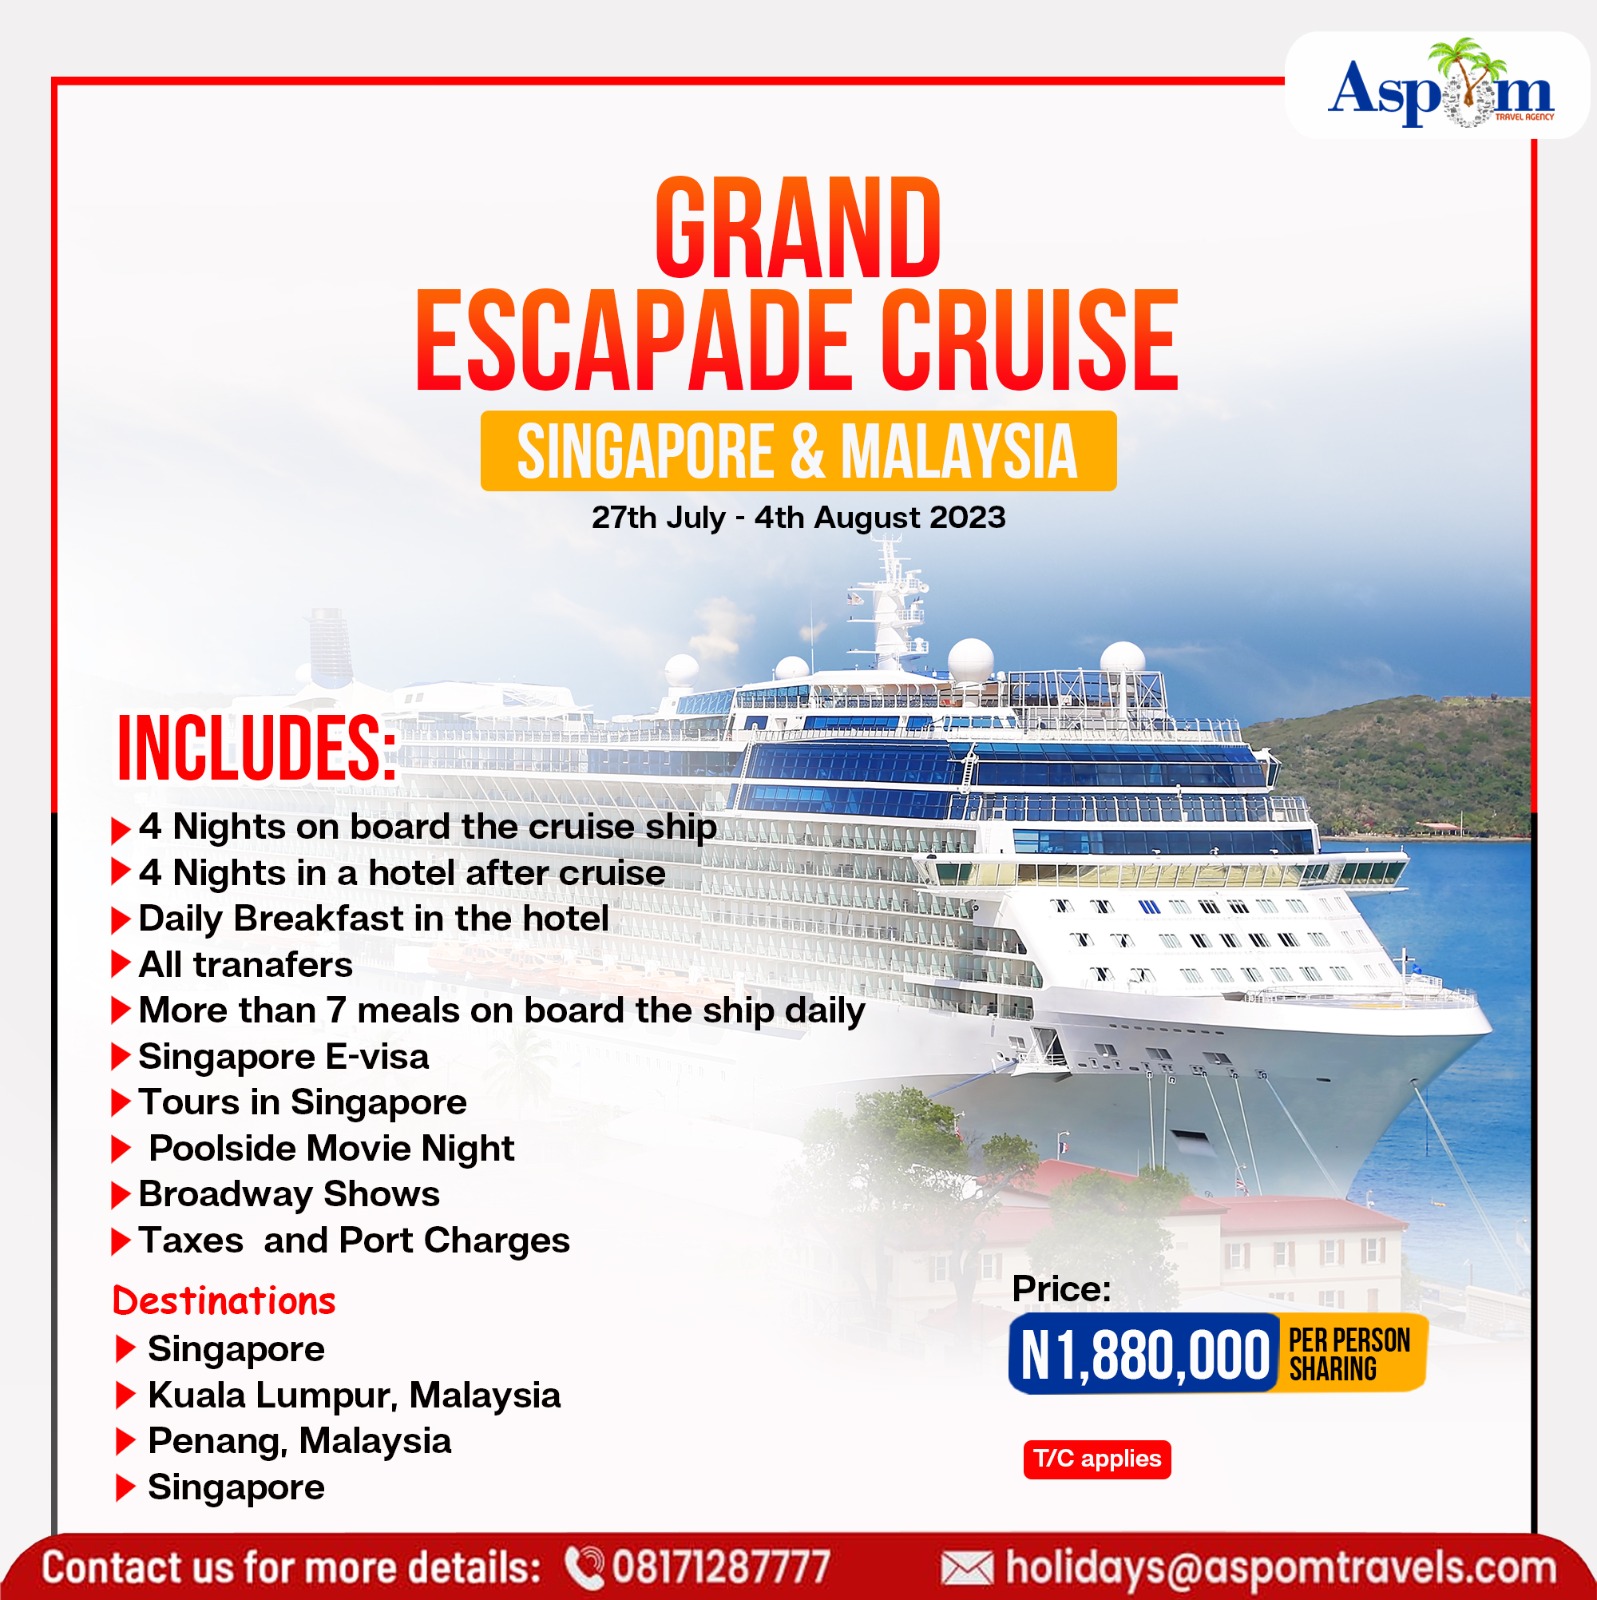 Grand Escapade Cruise, Singapore & Malaysia